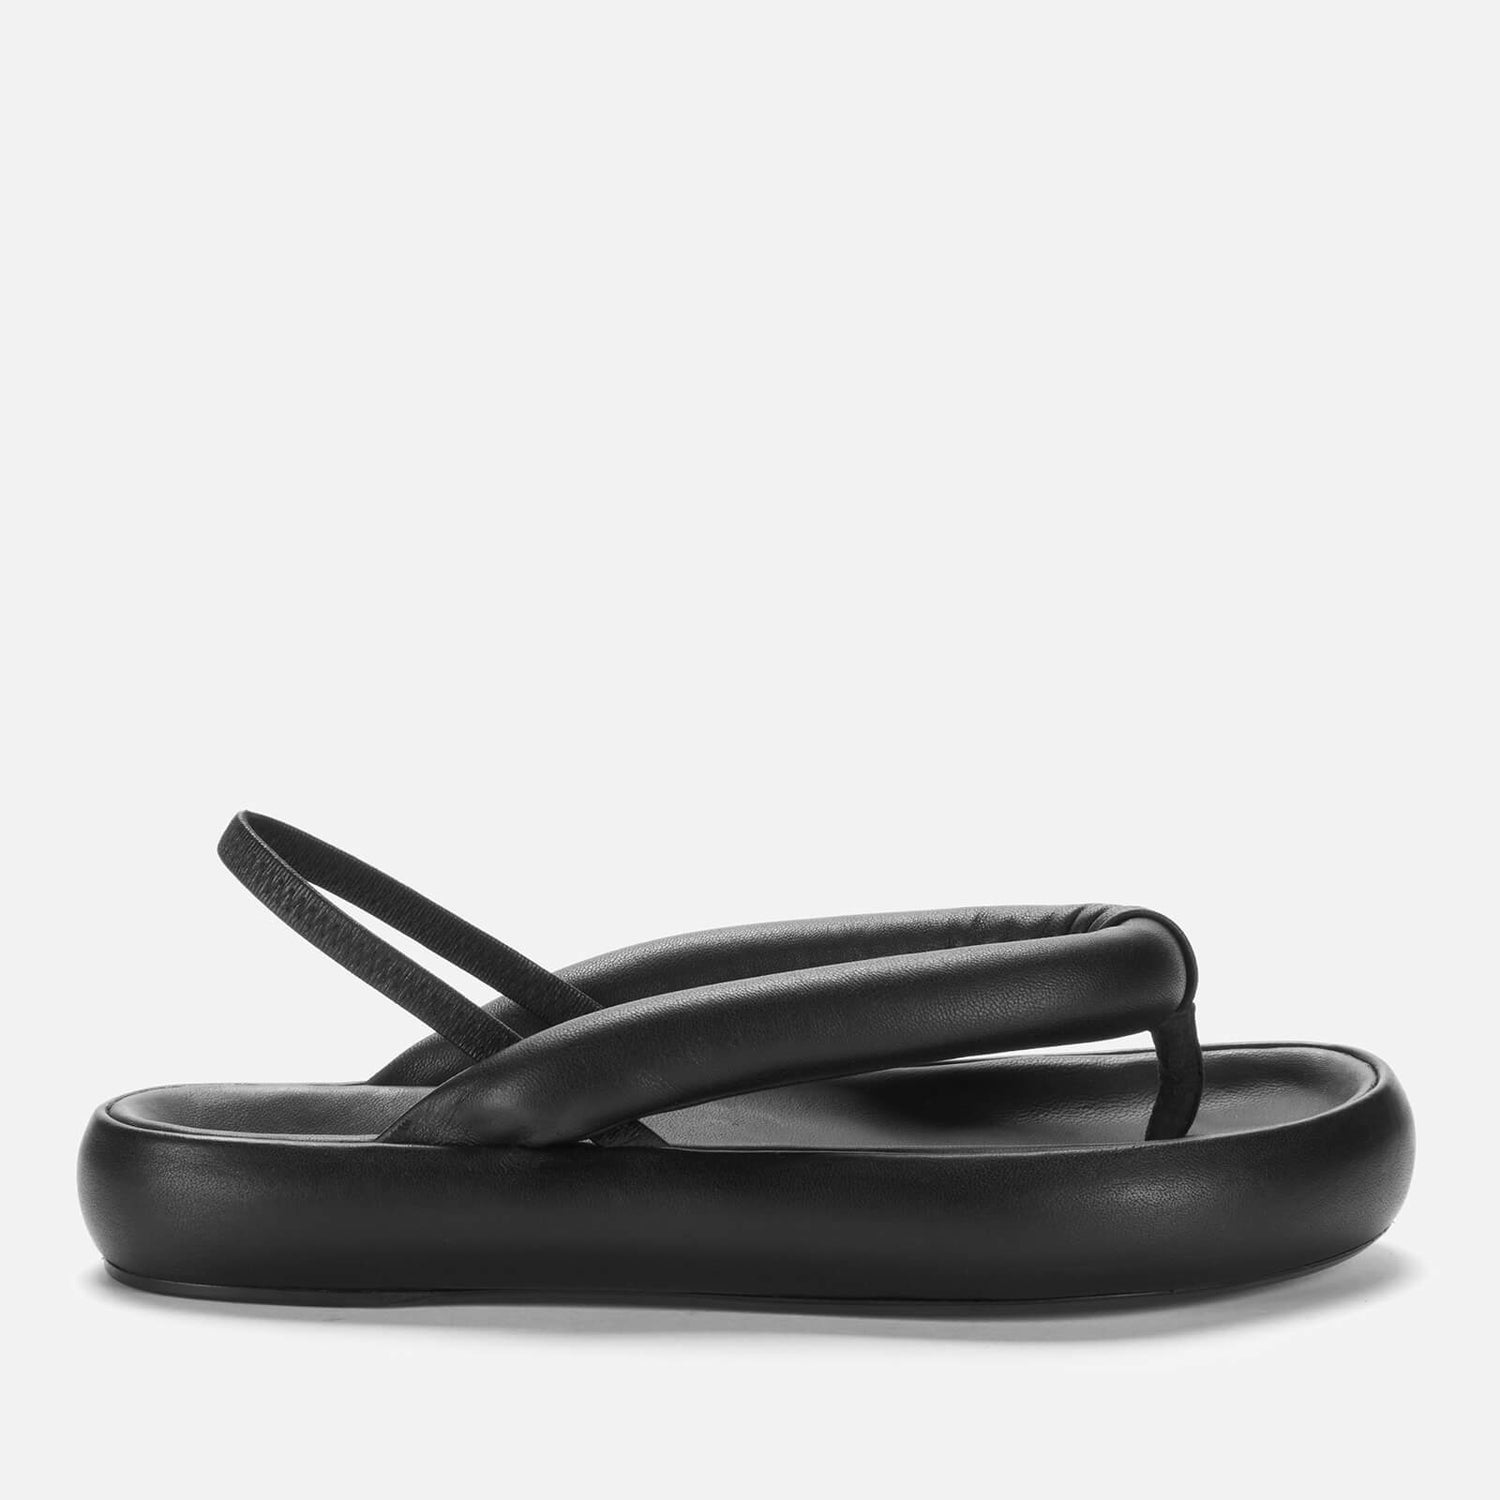 Isabel Marant Women's Orene Puffy Leather Toe Post Sandals - Black - UK 3